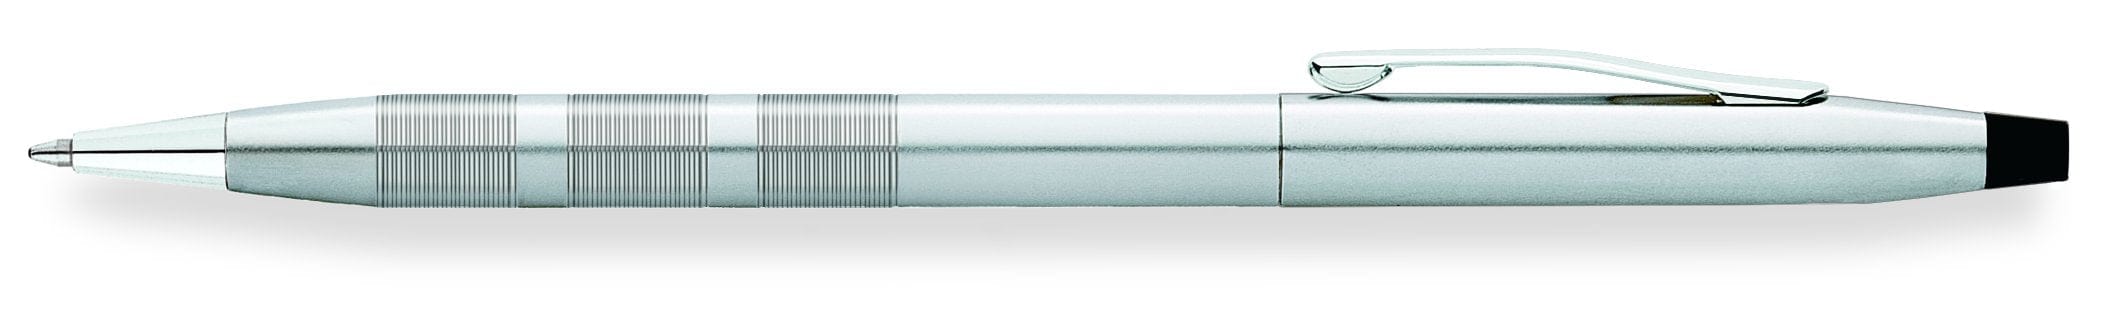 قلم حبر جاف كروم مصقول من كروس سينشري + مع حافظة بطاقة ائتمان مجانية في علبة هدايا مخصصة - AC295-1+AT0082-14